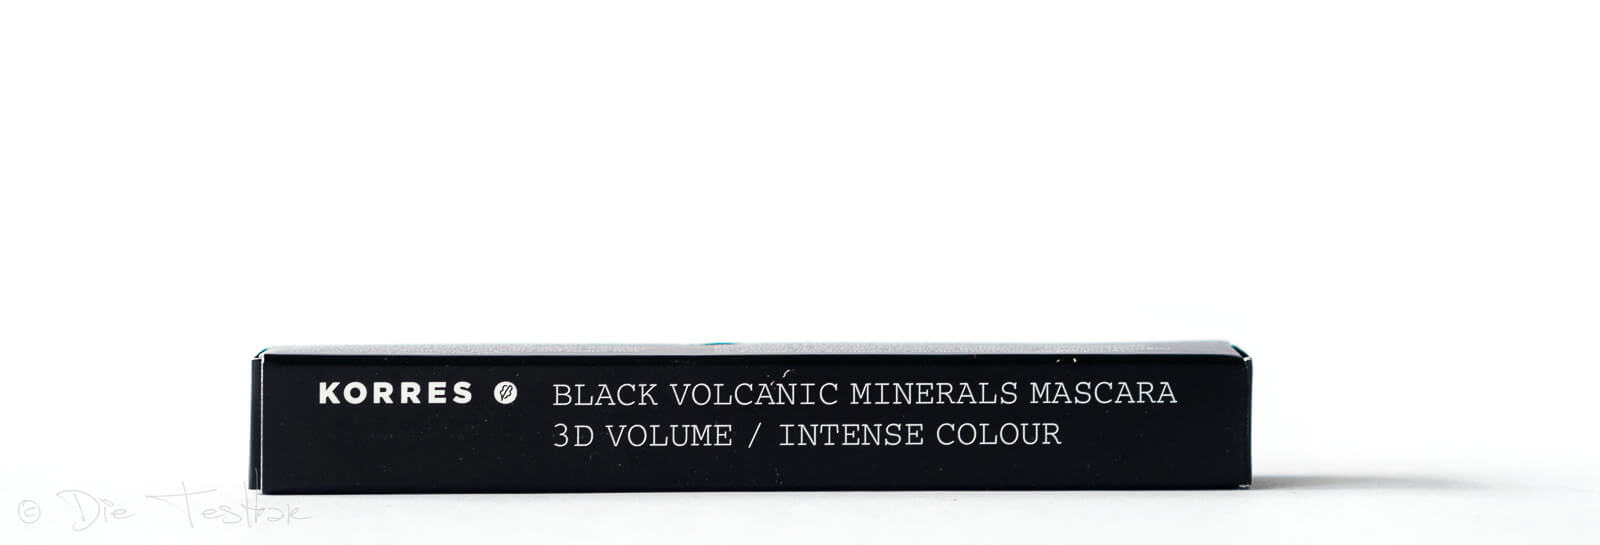 Professional Volume Mascara - Black Volcanic Minerals BRAUN von Korres